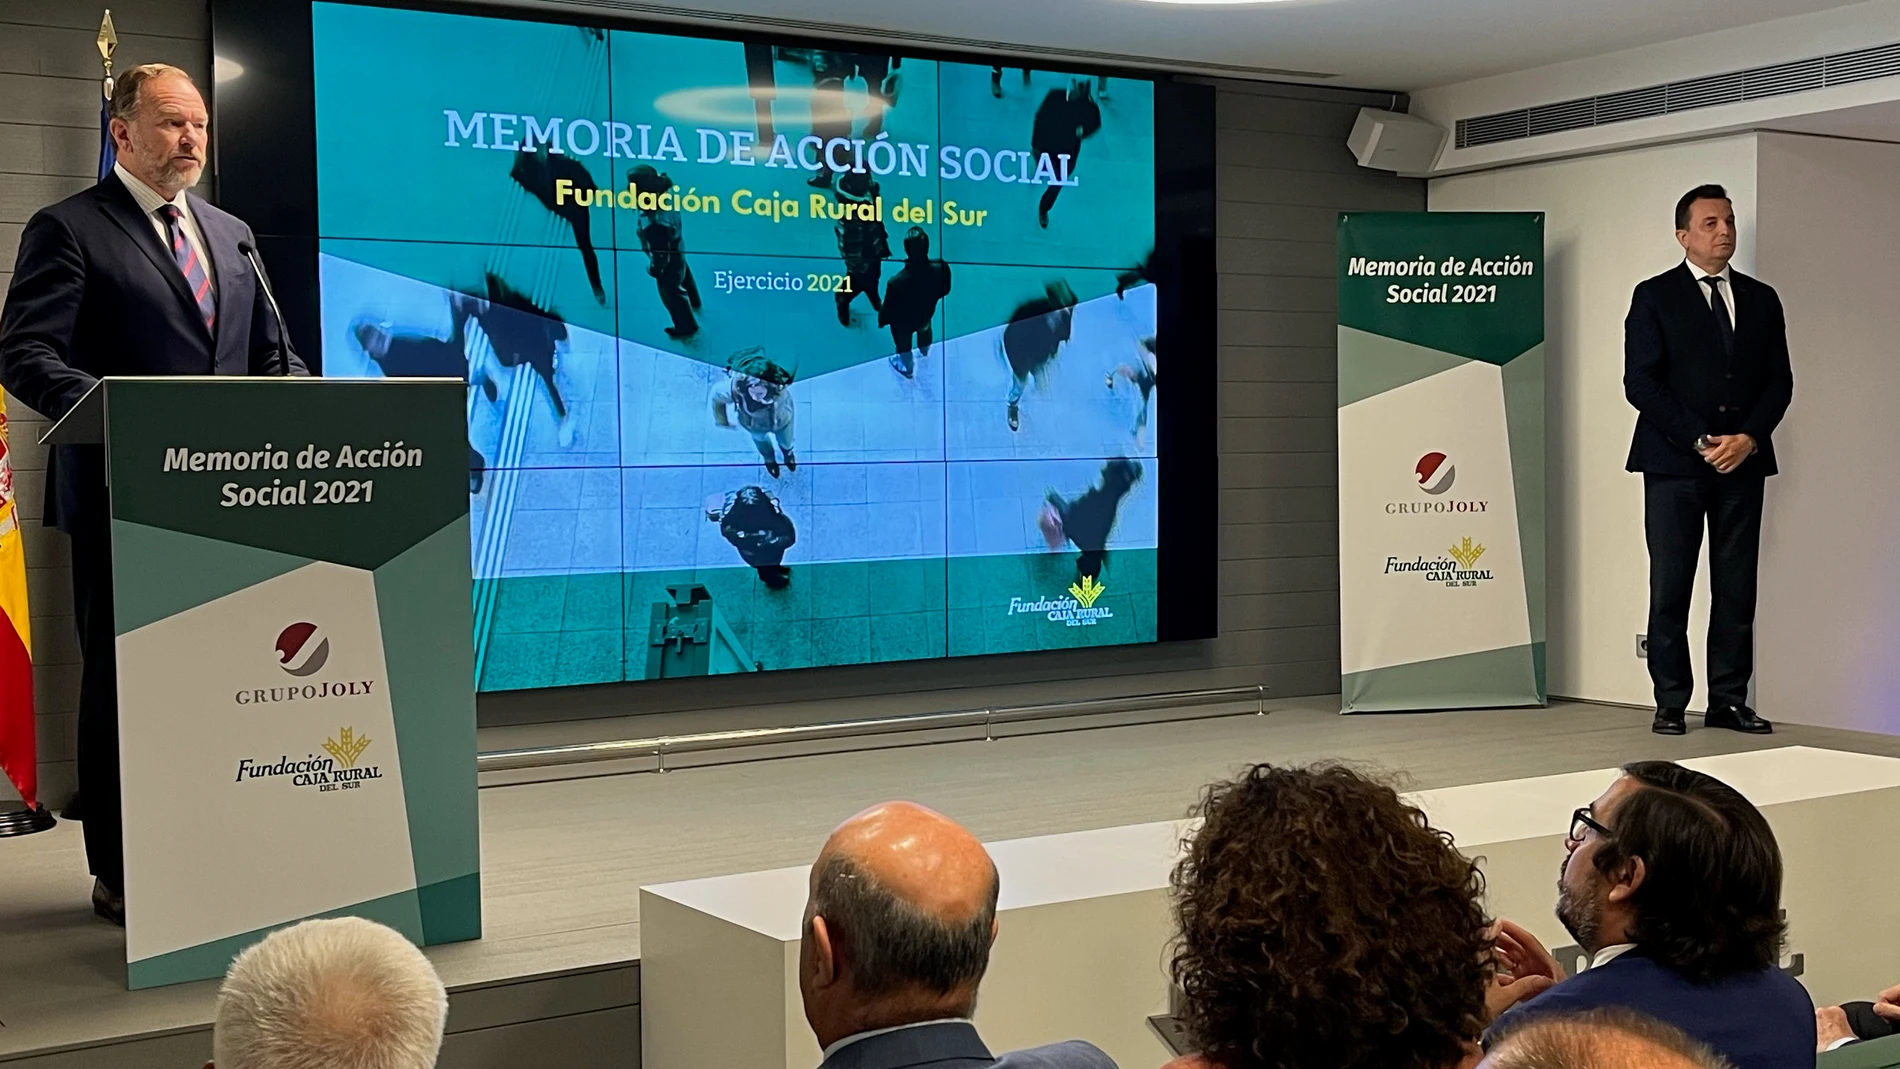 Imagen de la presentación de la Memoria de Acción Social de la Fundación Caja Rural del Sur con el balance de 2021. FUNDACIÓN CAJA RURAL DEL SUR